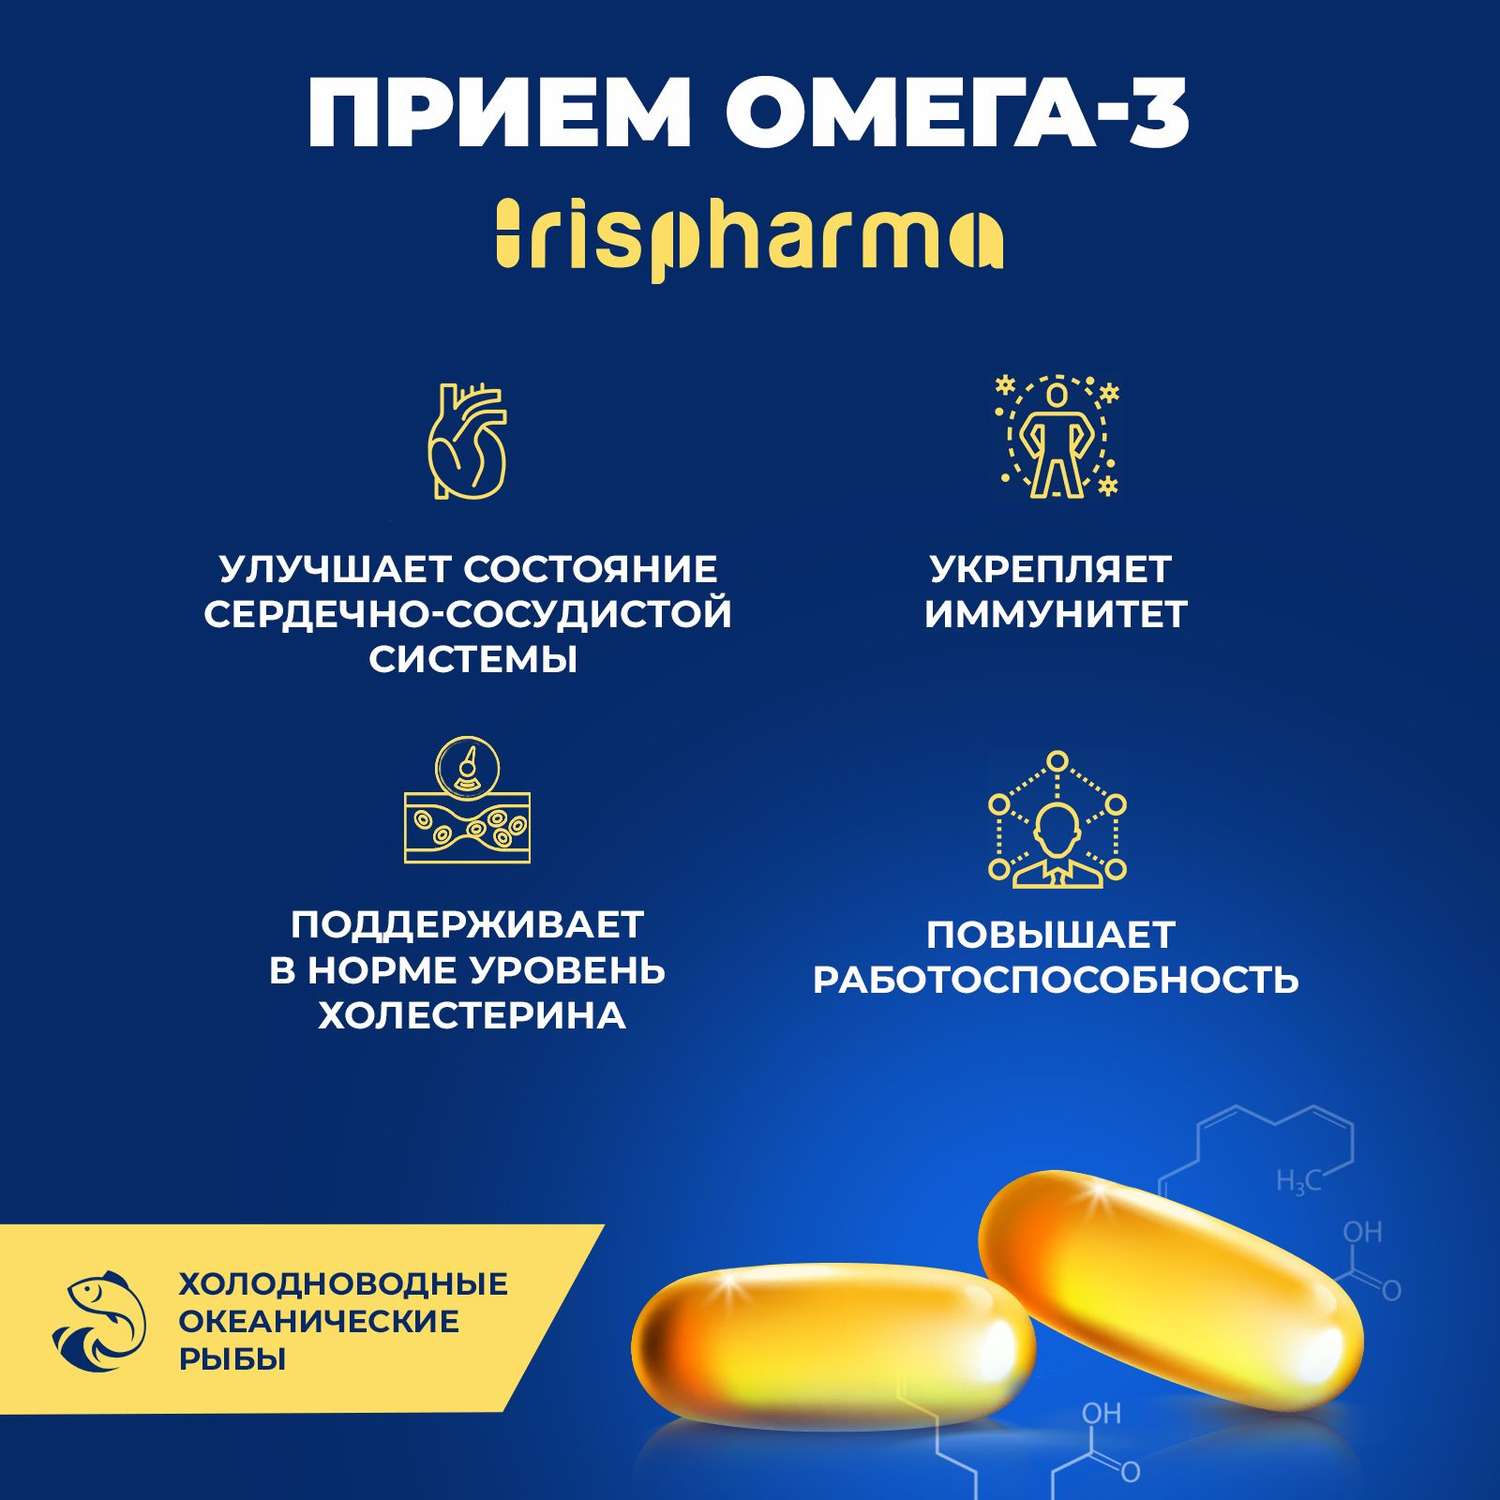 Биологически активная добавка IRISPHARMA Омега-3 90% 1400 мг 90 капсул - фото 3